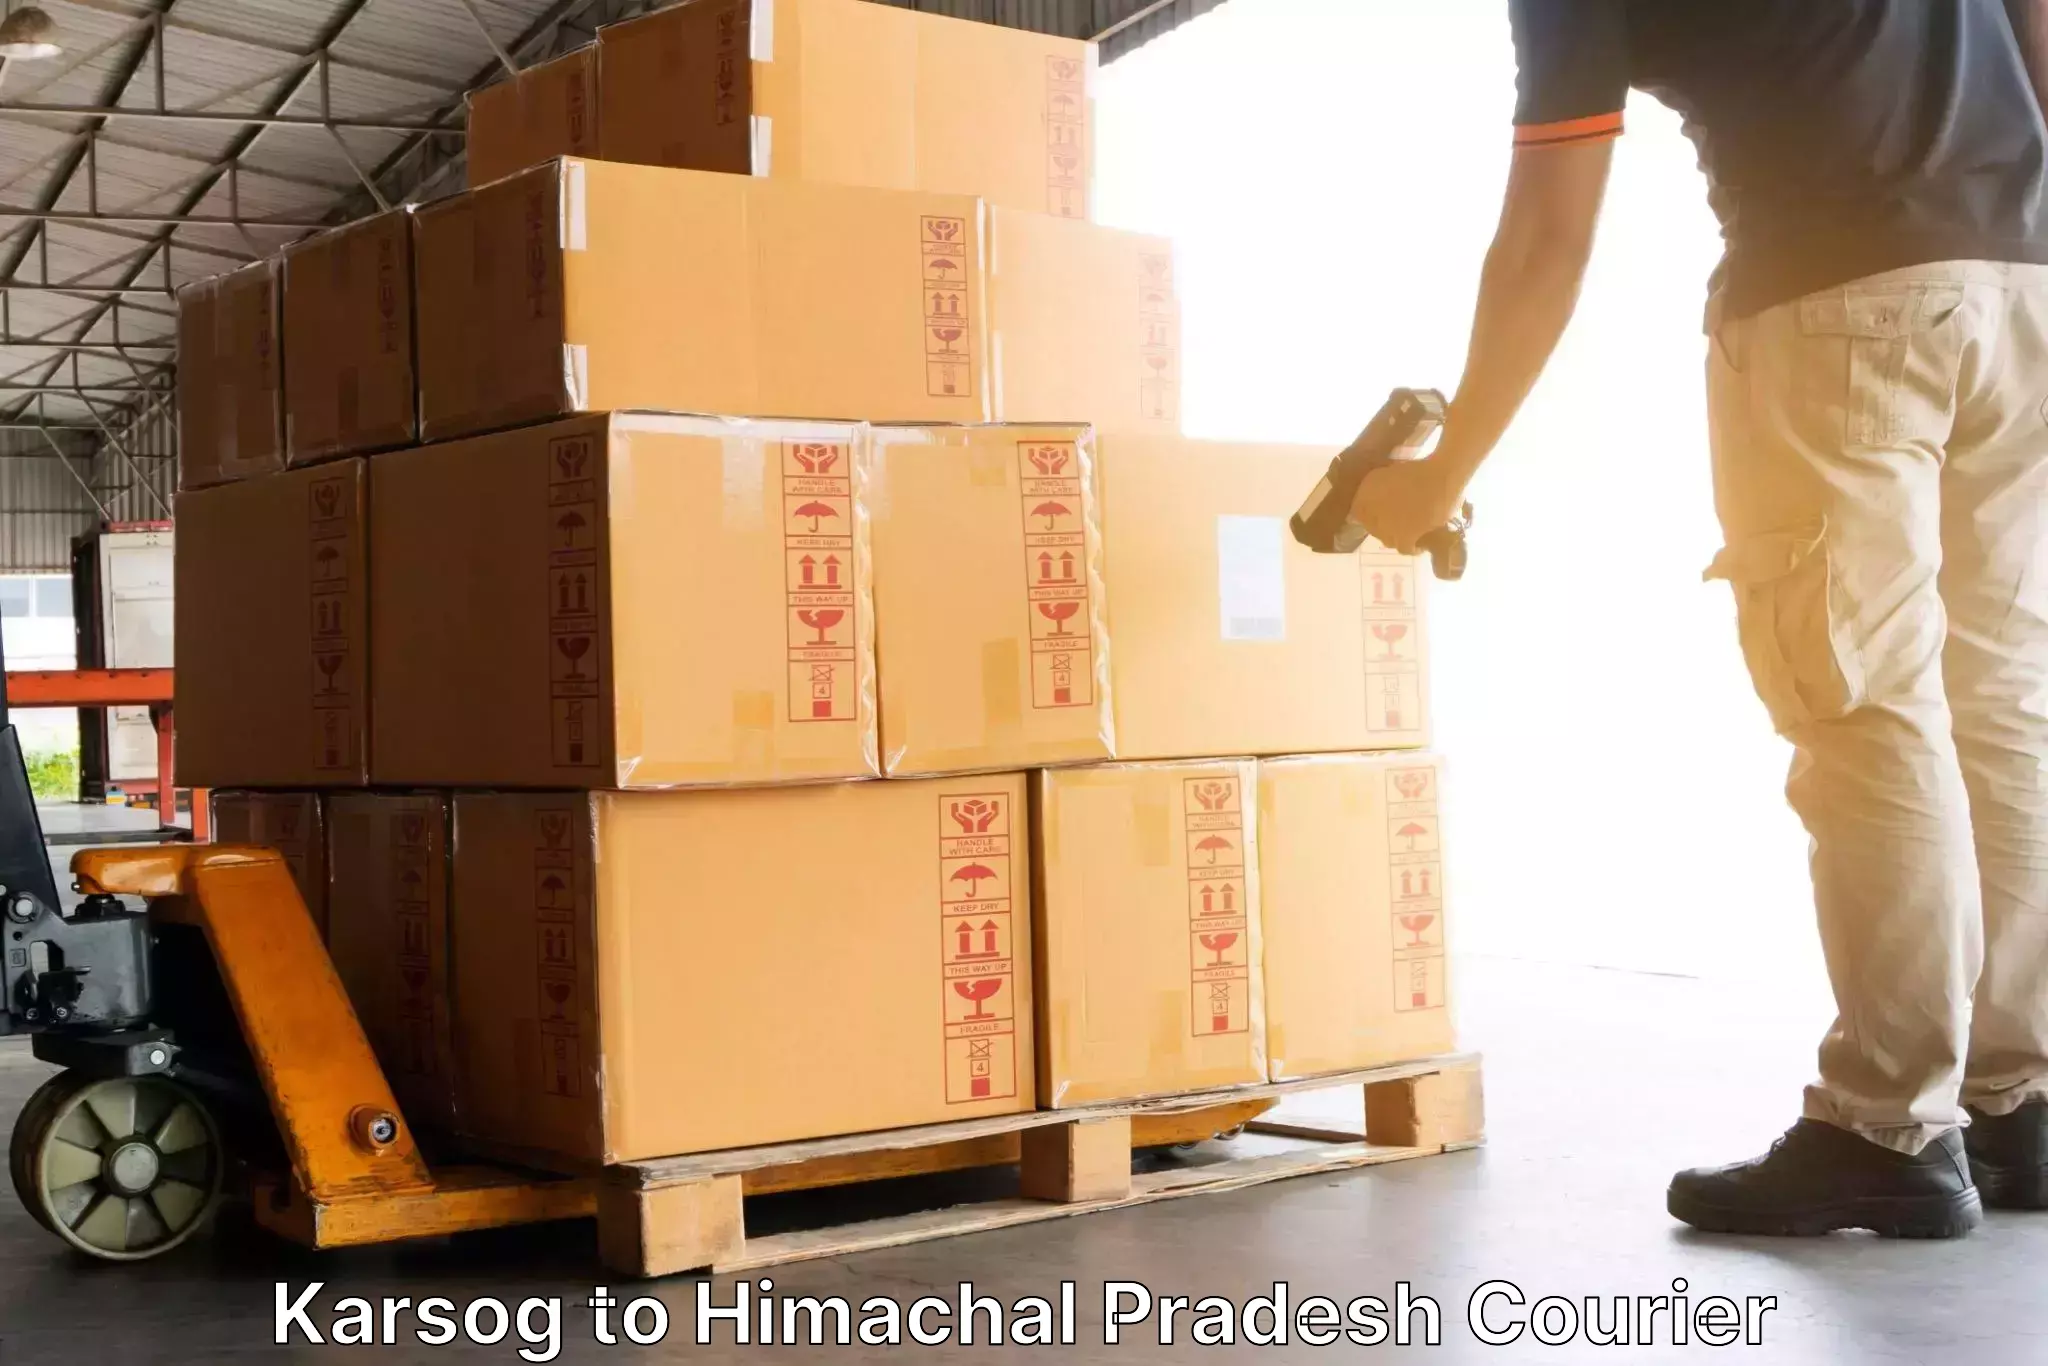 Modern courier technology Karsog to Una Himachal Pradesh